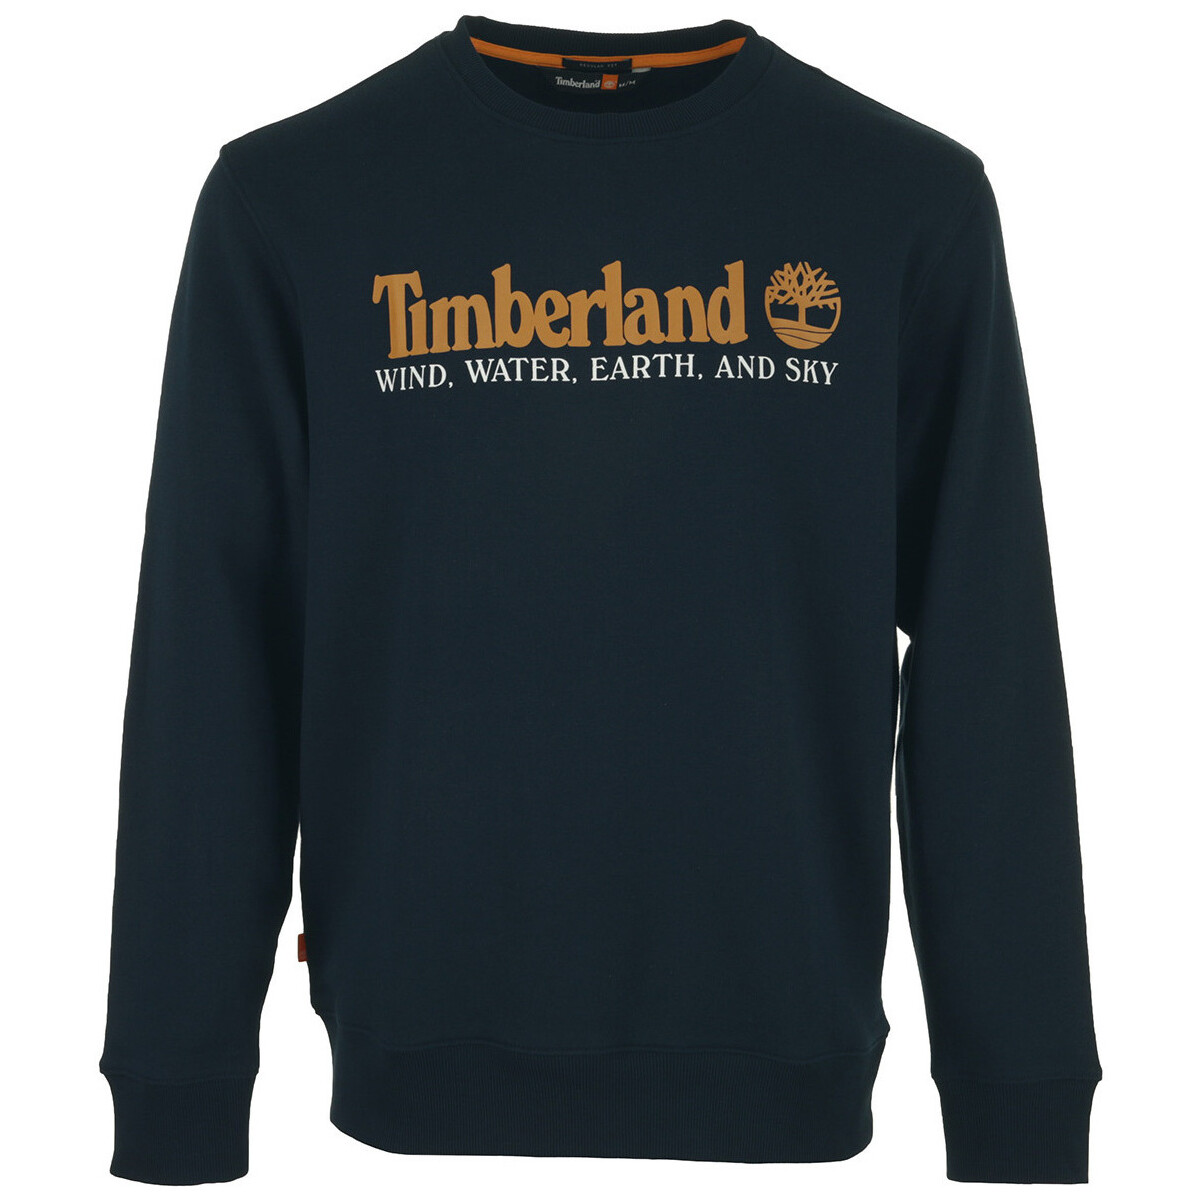 Textiel Heren Sweaters / Sweatshirts Timberland Wind water earth and Sky front Sweatshirt Blauw